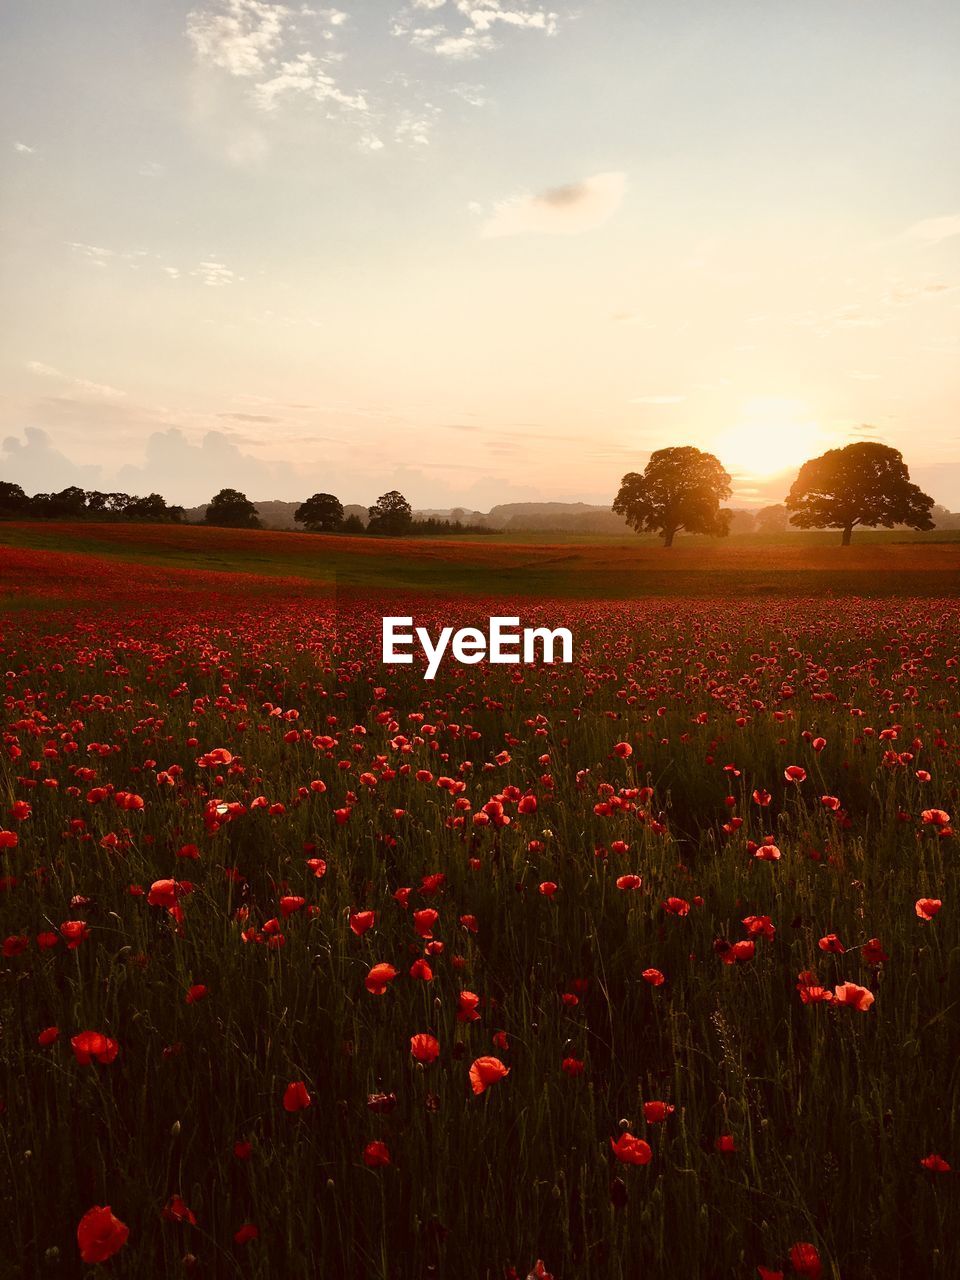 A poppy field during a golden sunset